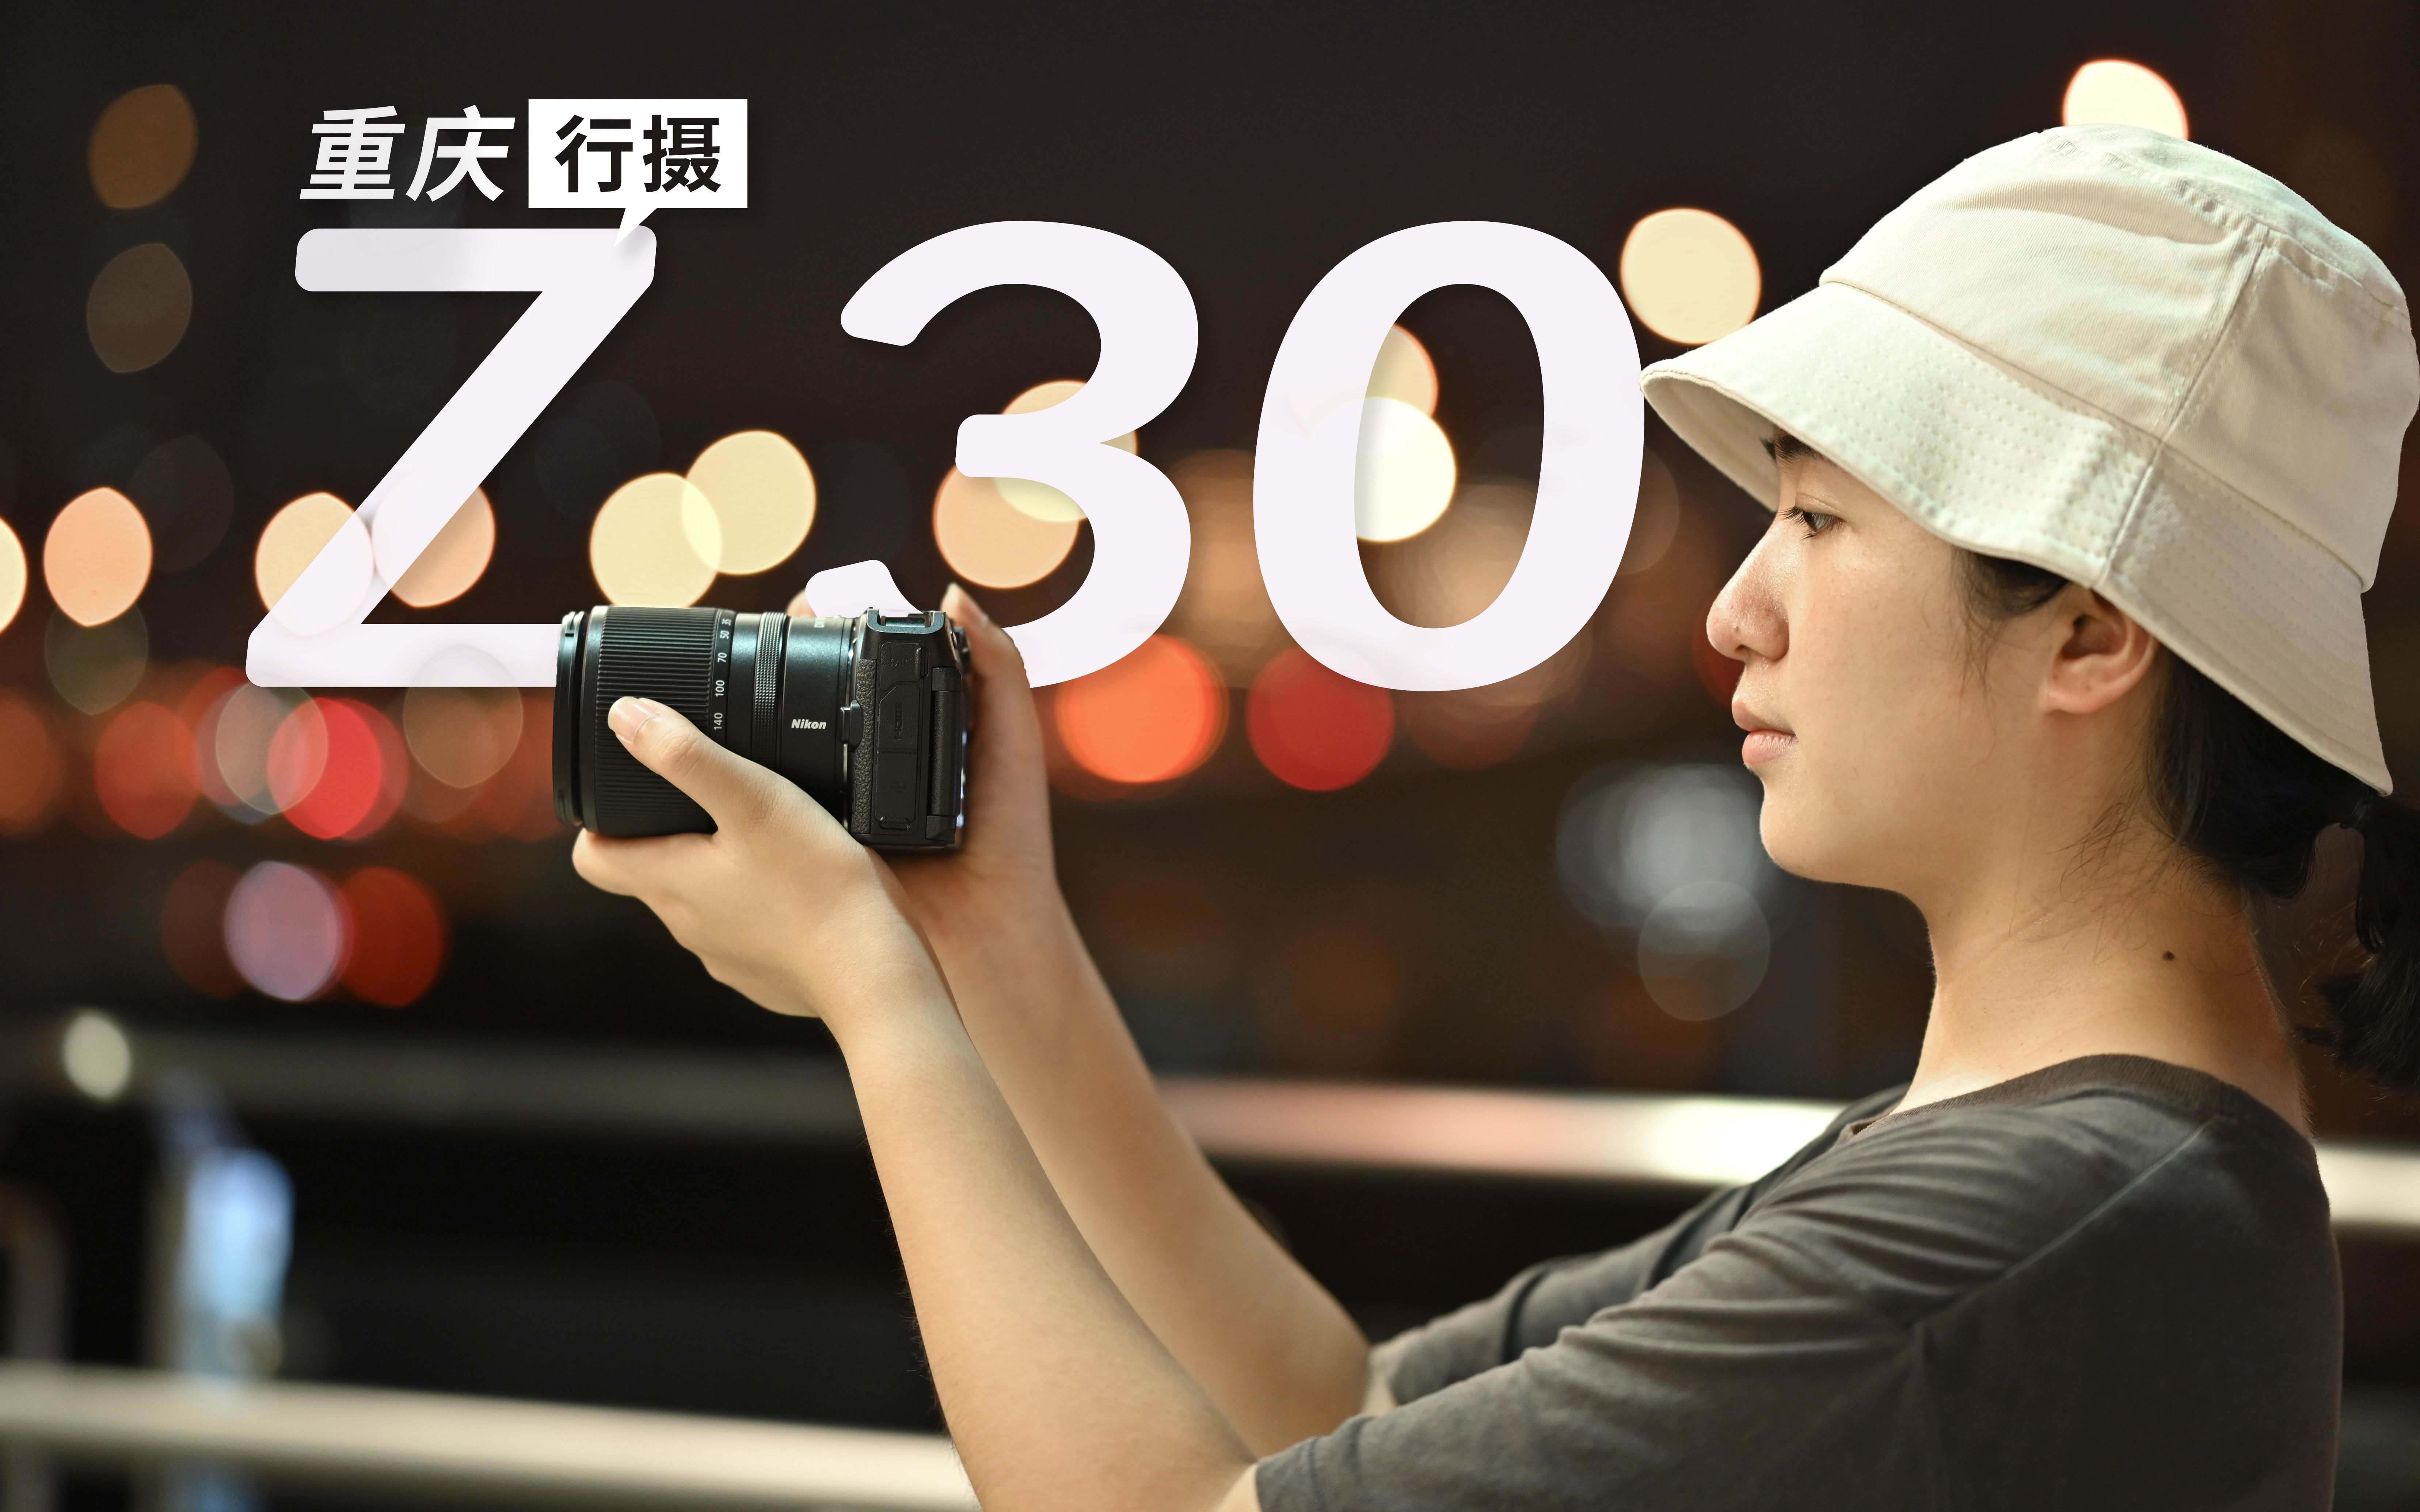 影像狗 | 尼康 Z 30是适合旅拍的相机吗？重庆旅拍幕后分享